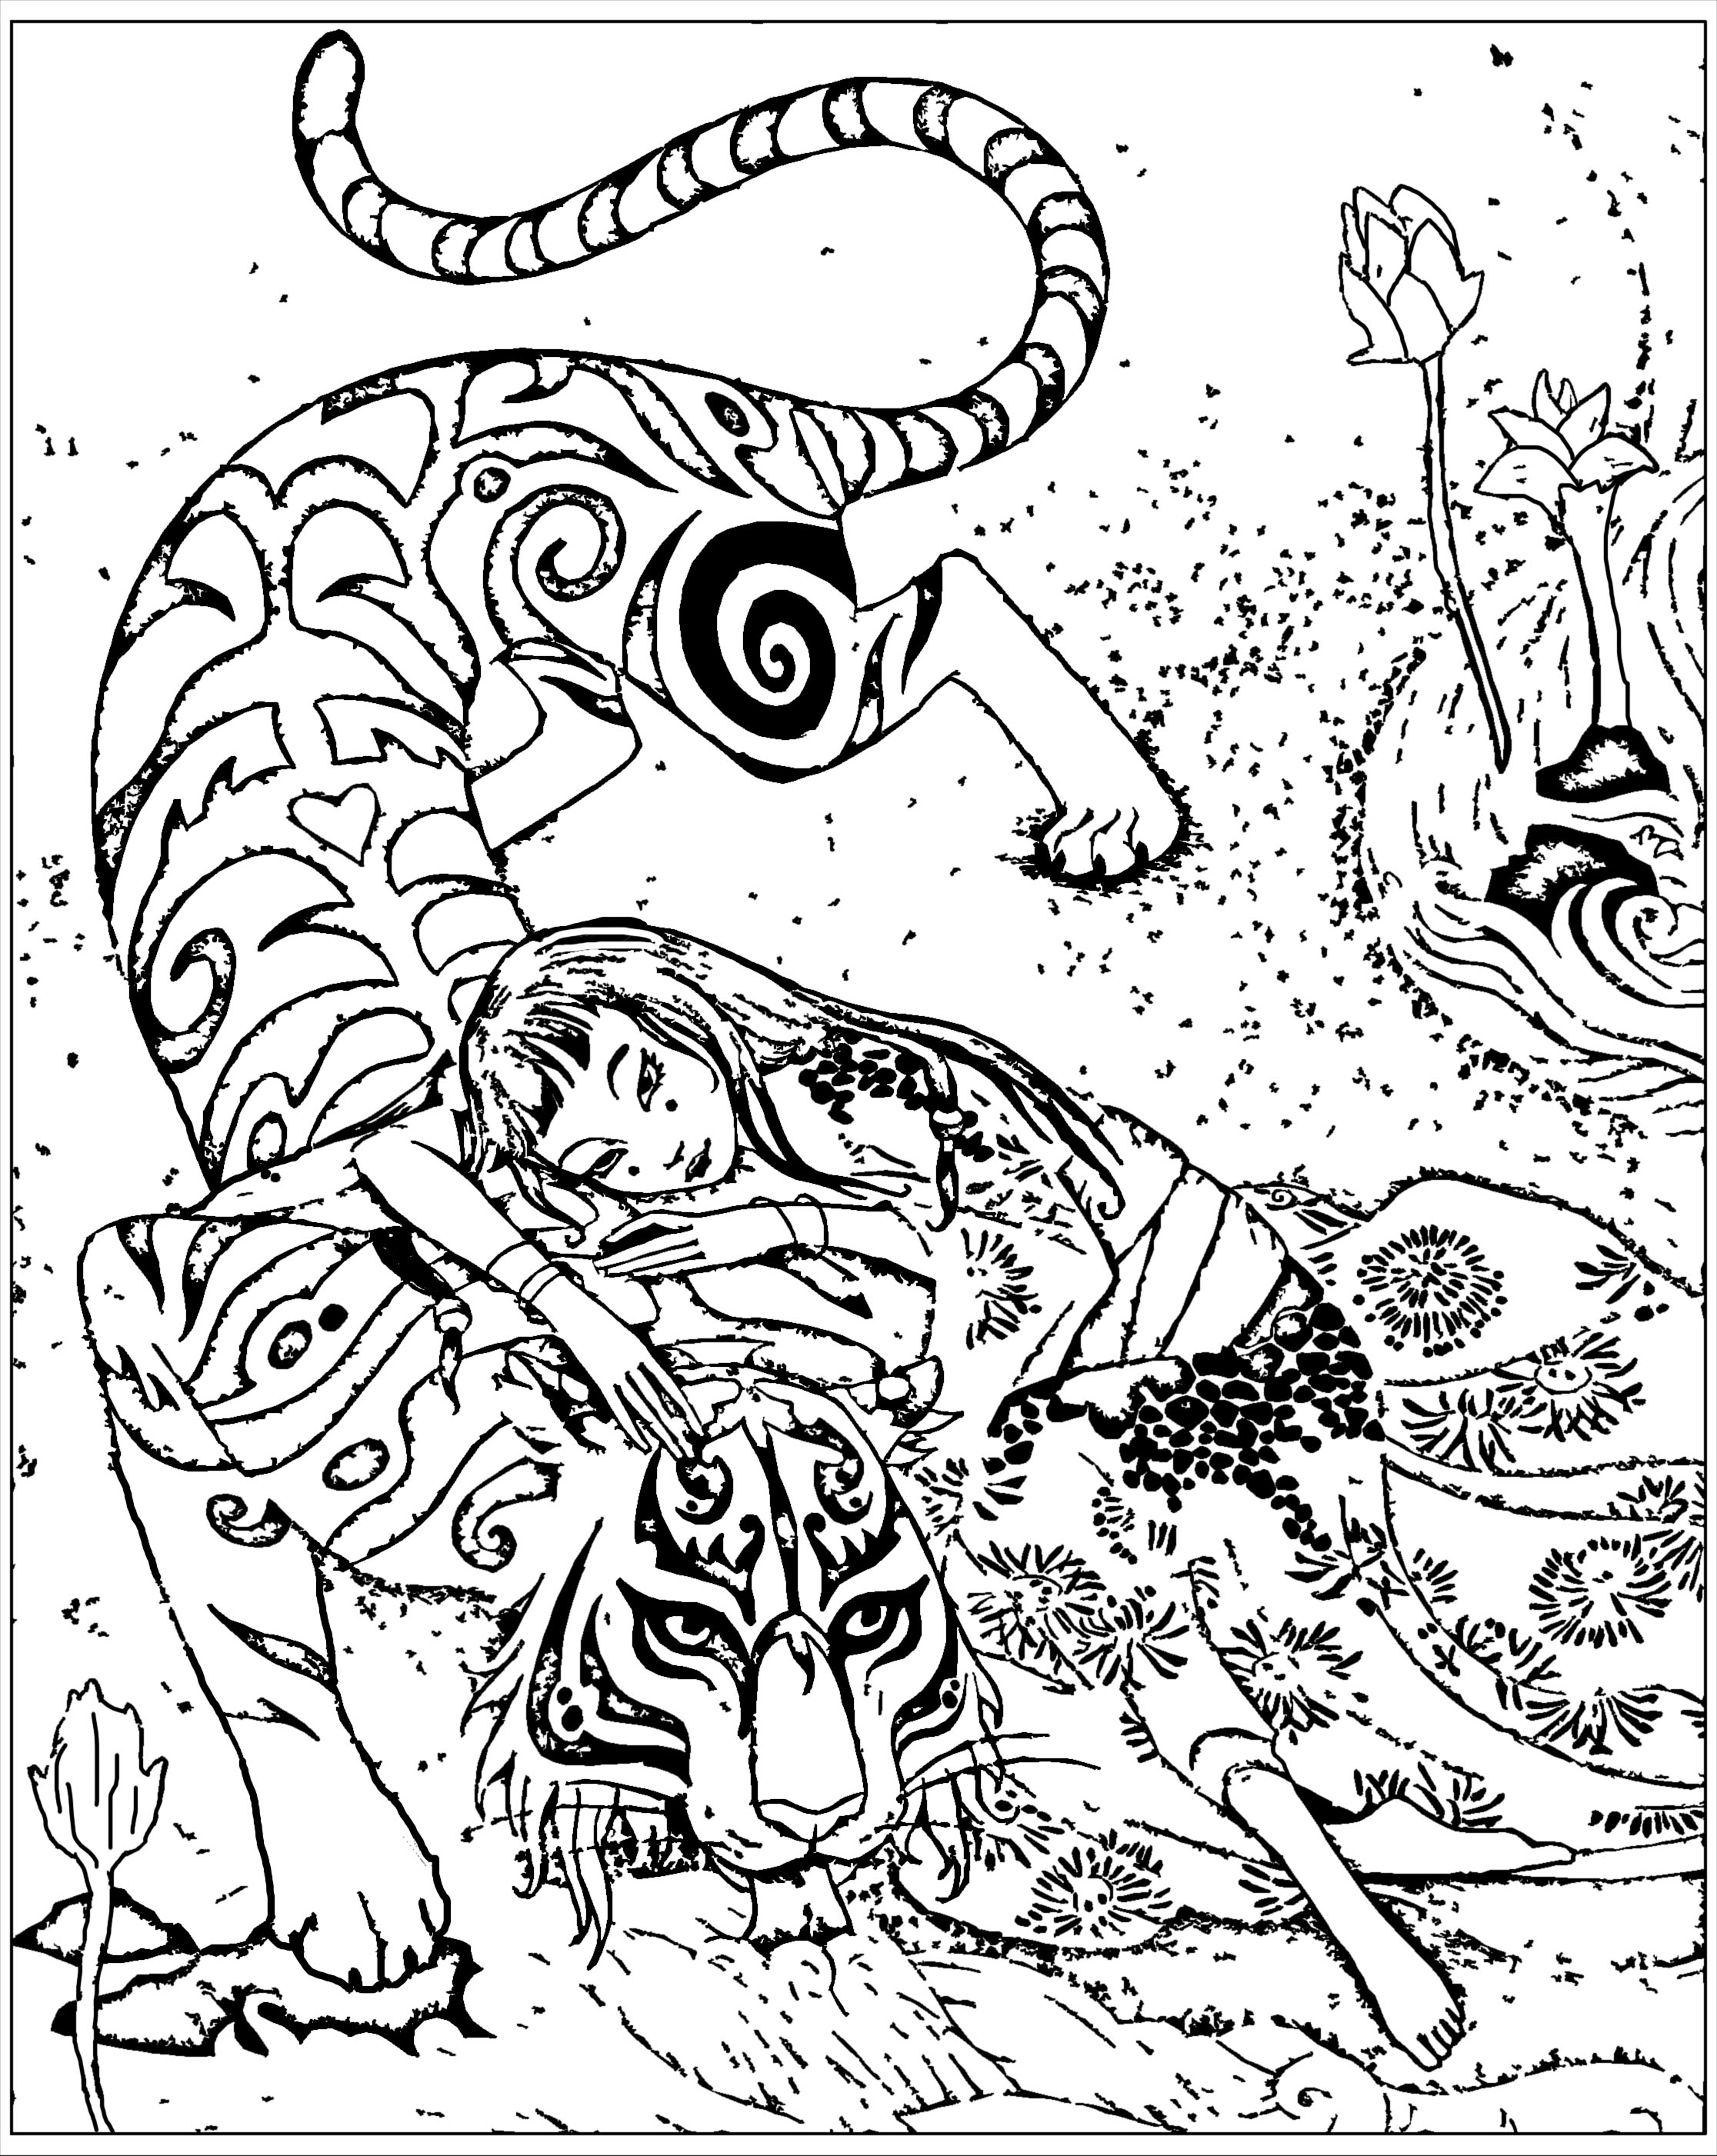 Colorear inspirado en el libro Le tigre dévoué, de Qi feng Shen. Qi feng Shen es un escritor chino conocido sobre todo por su colección de cien relatos que mezclan lo sobrenatural con las realidades sociales de la época ('Xieduo', 1792): textos con personajes que evolucionan en tramas llenas de delicadeza e inteligencia.